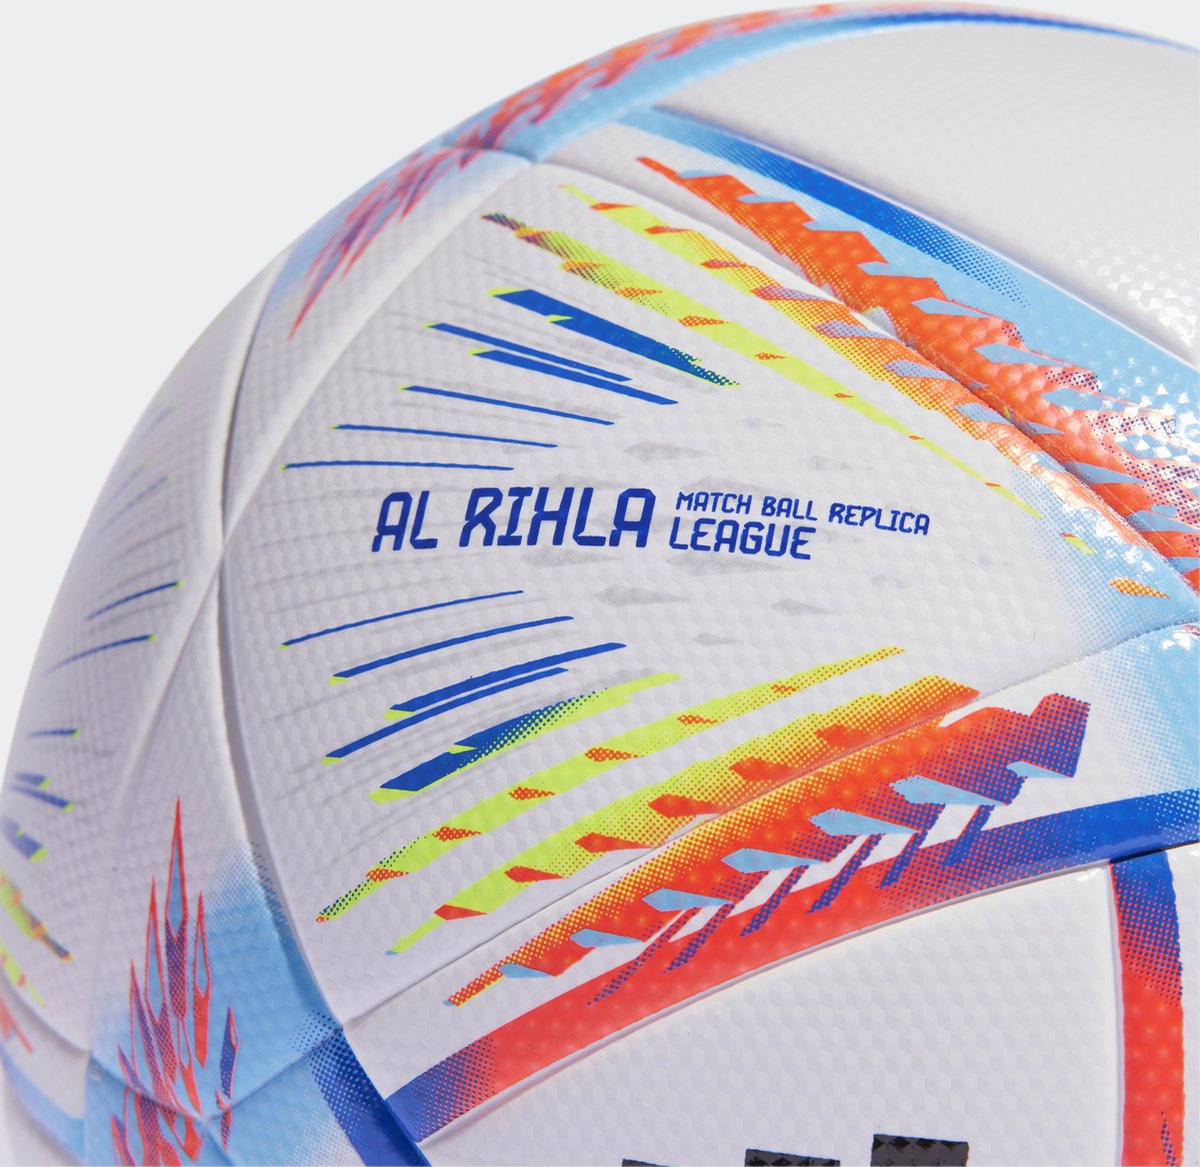 Ballon Réplique officielle de l'Euro 24 adidas Fussballliebe (en boîte)